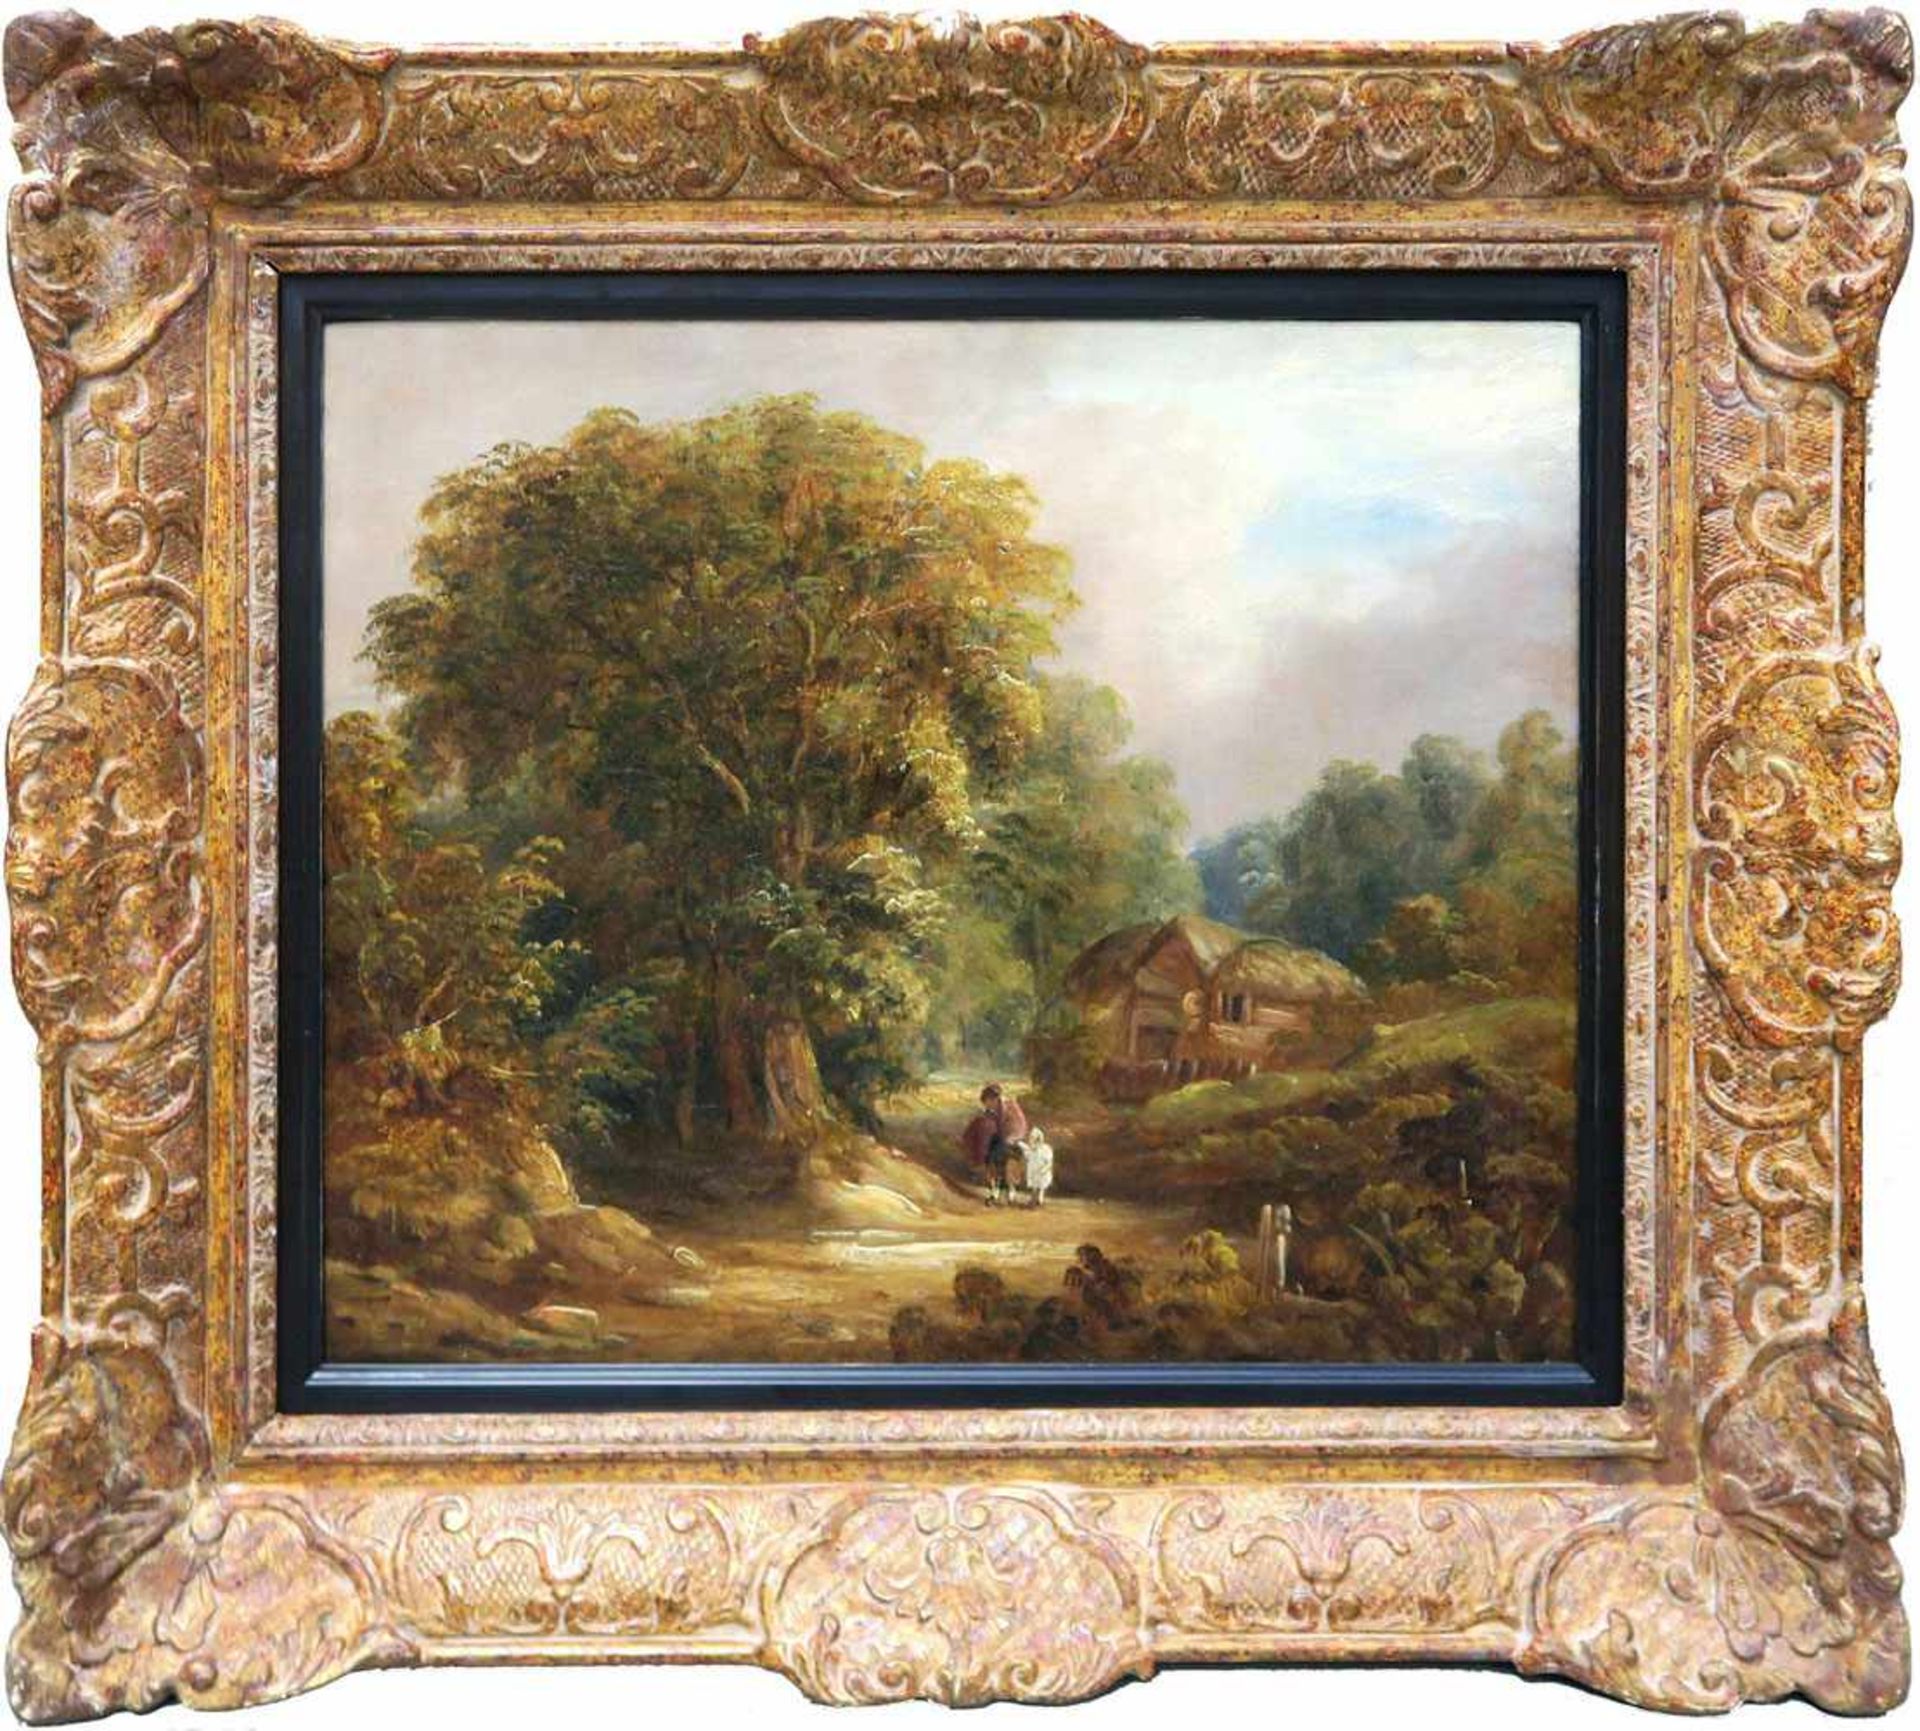 wohl England 19. Jh. Landschaft mit Cottage und Figurenstaffage Öl/Lwd. 36 x 44 cm. Doubliert. Rest. - Bild 4 aus 4